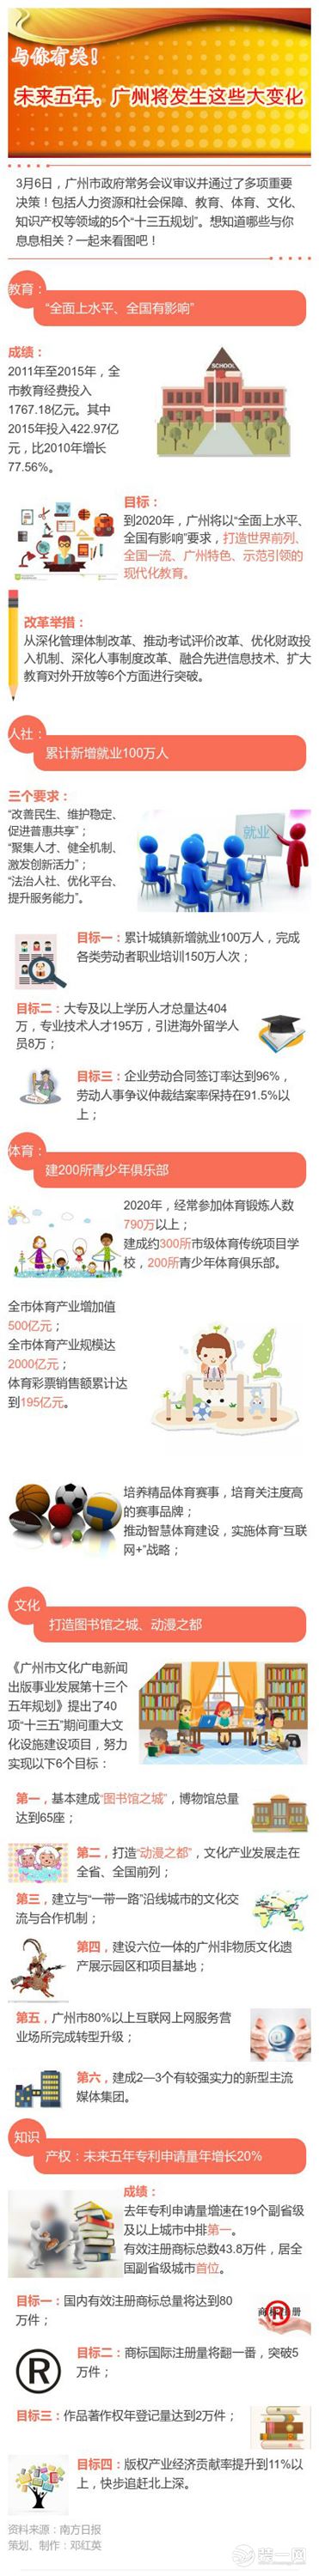 广州2020城中村规划图